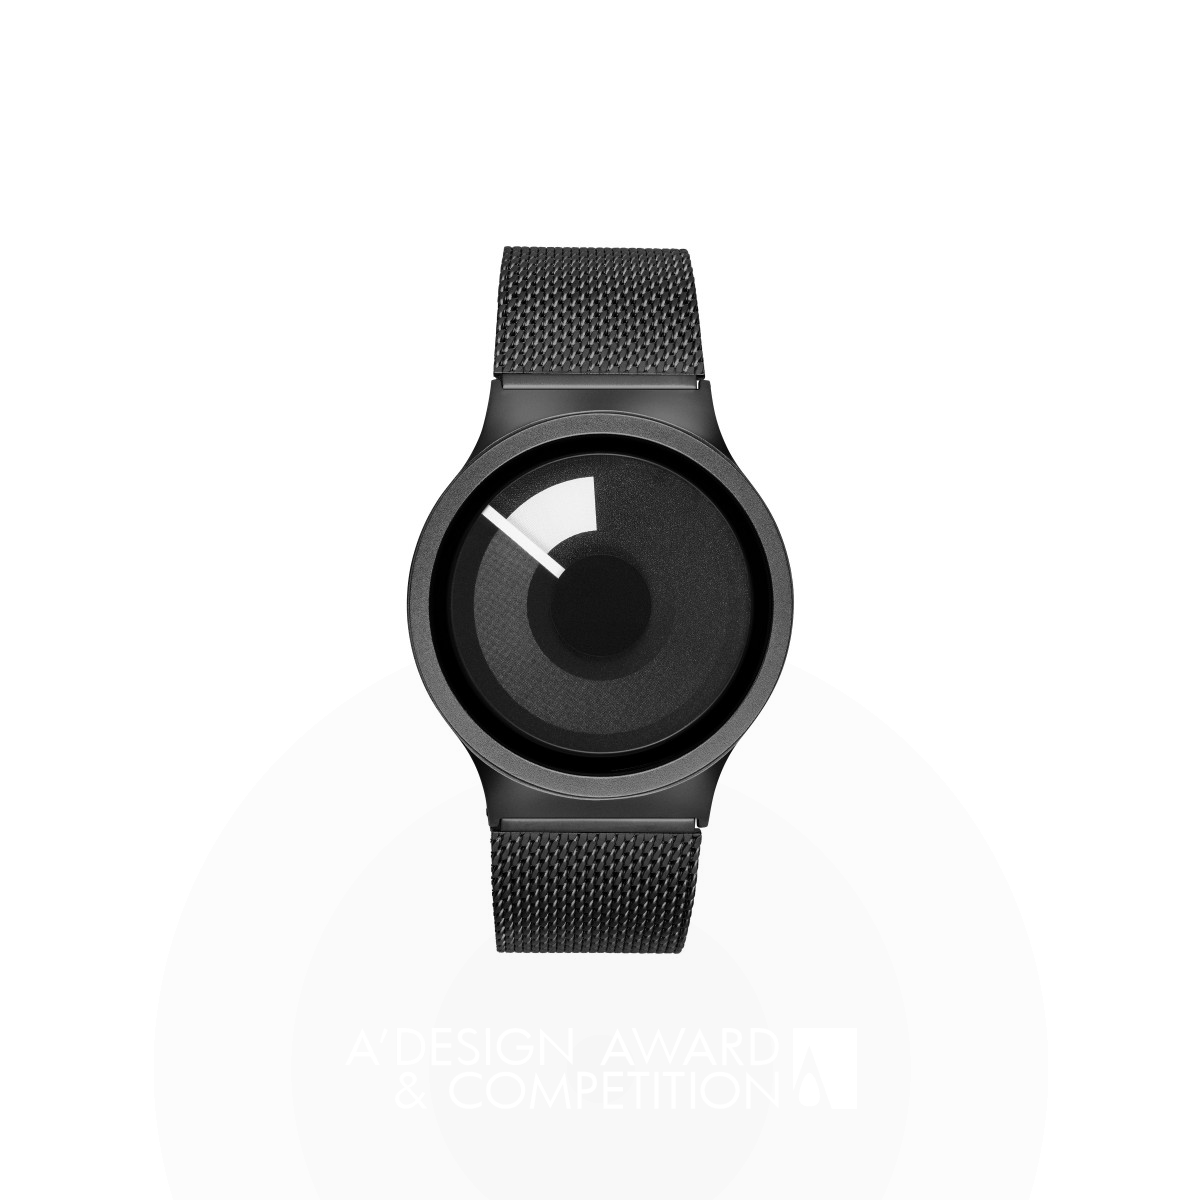 XS Horizon Wrist Watch by Dabi Robert Golden Watch Design Award Winner 2023 